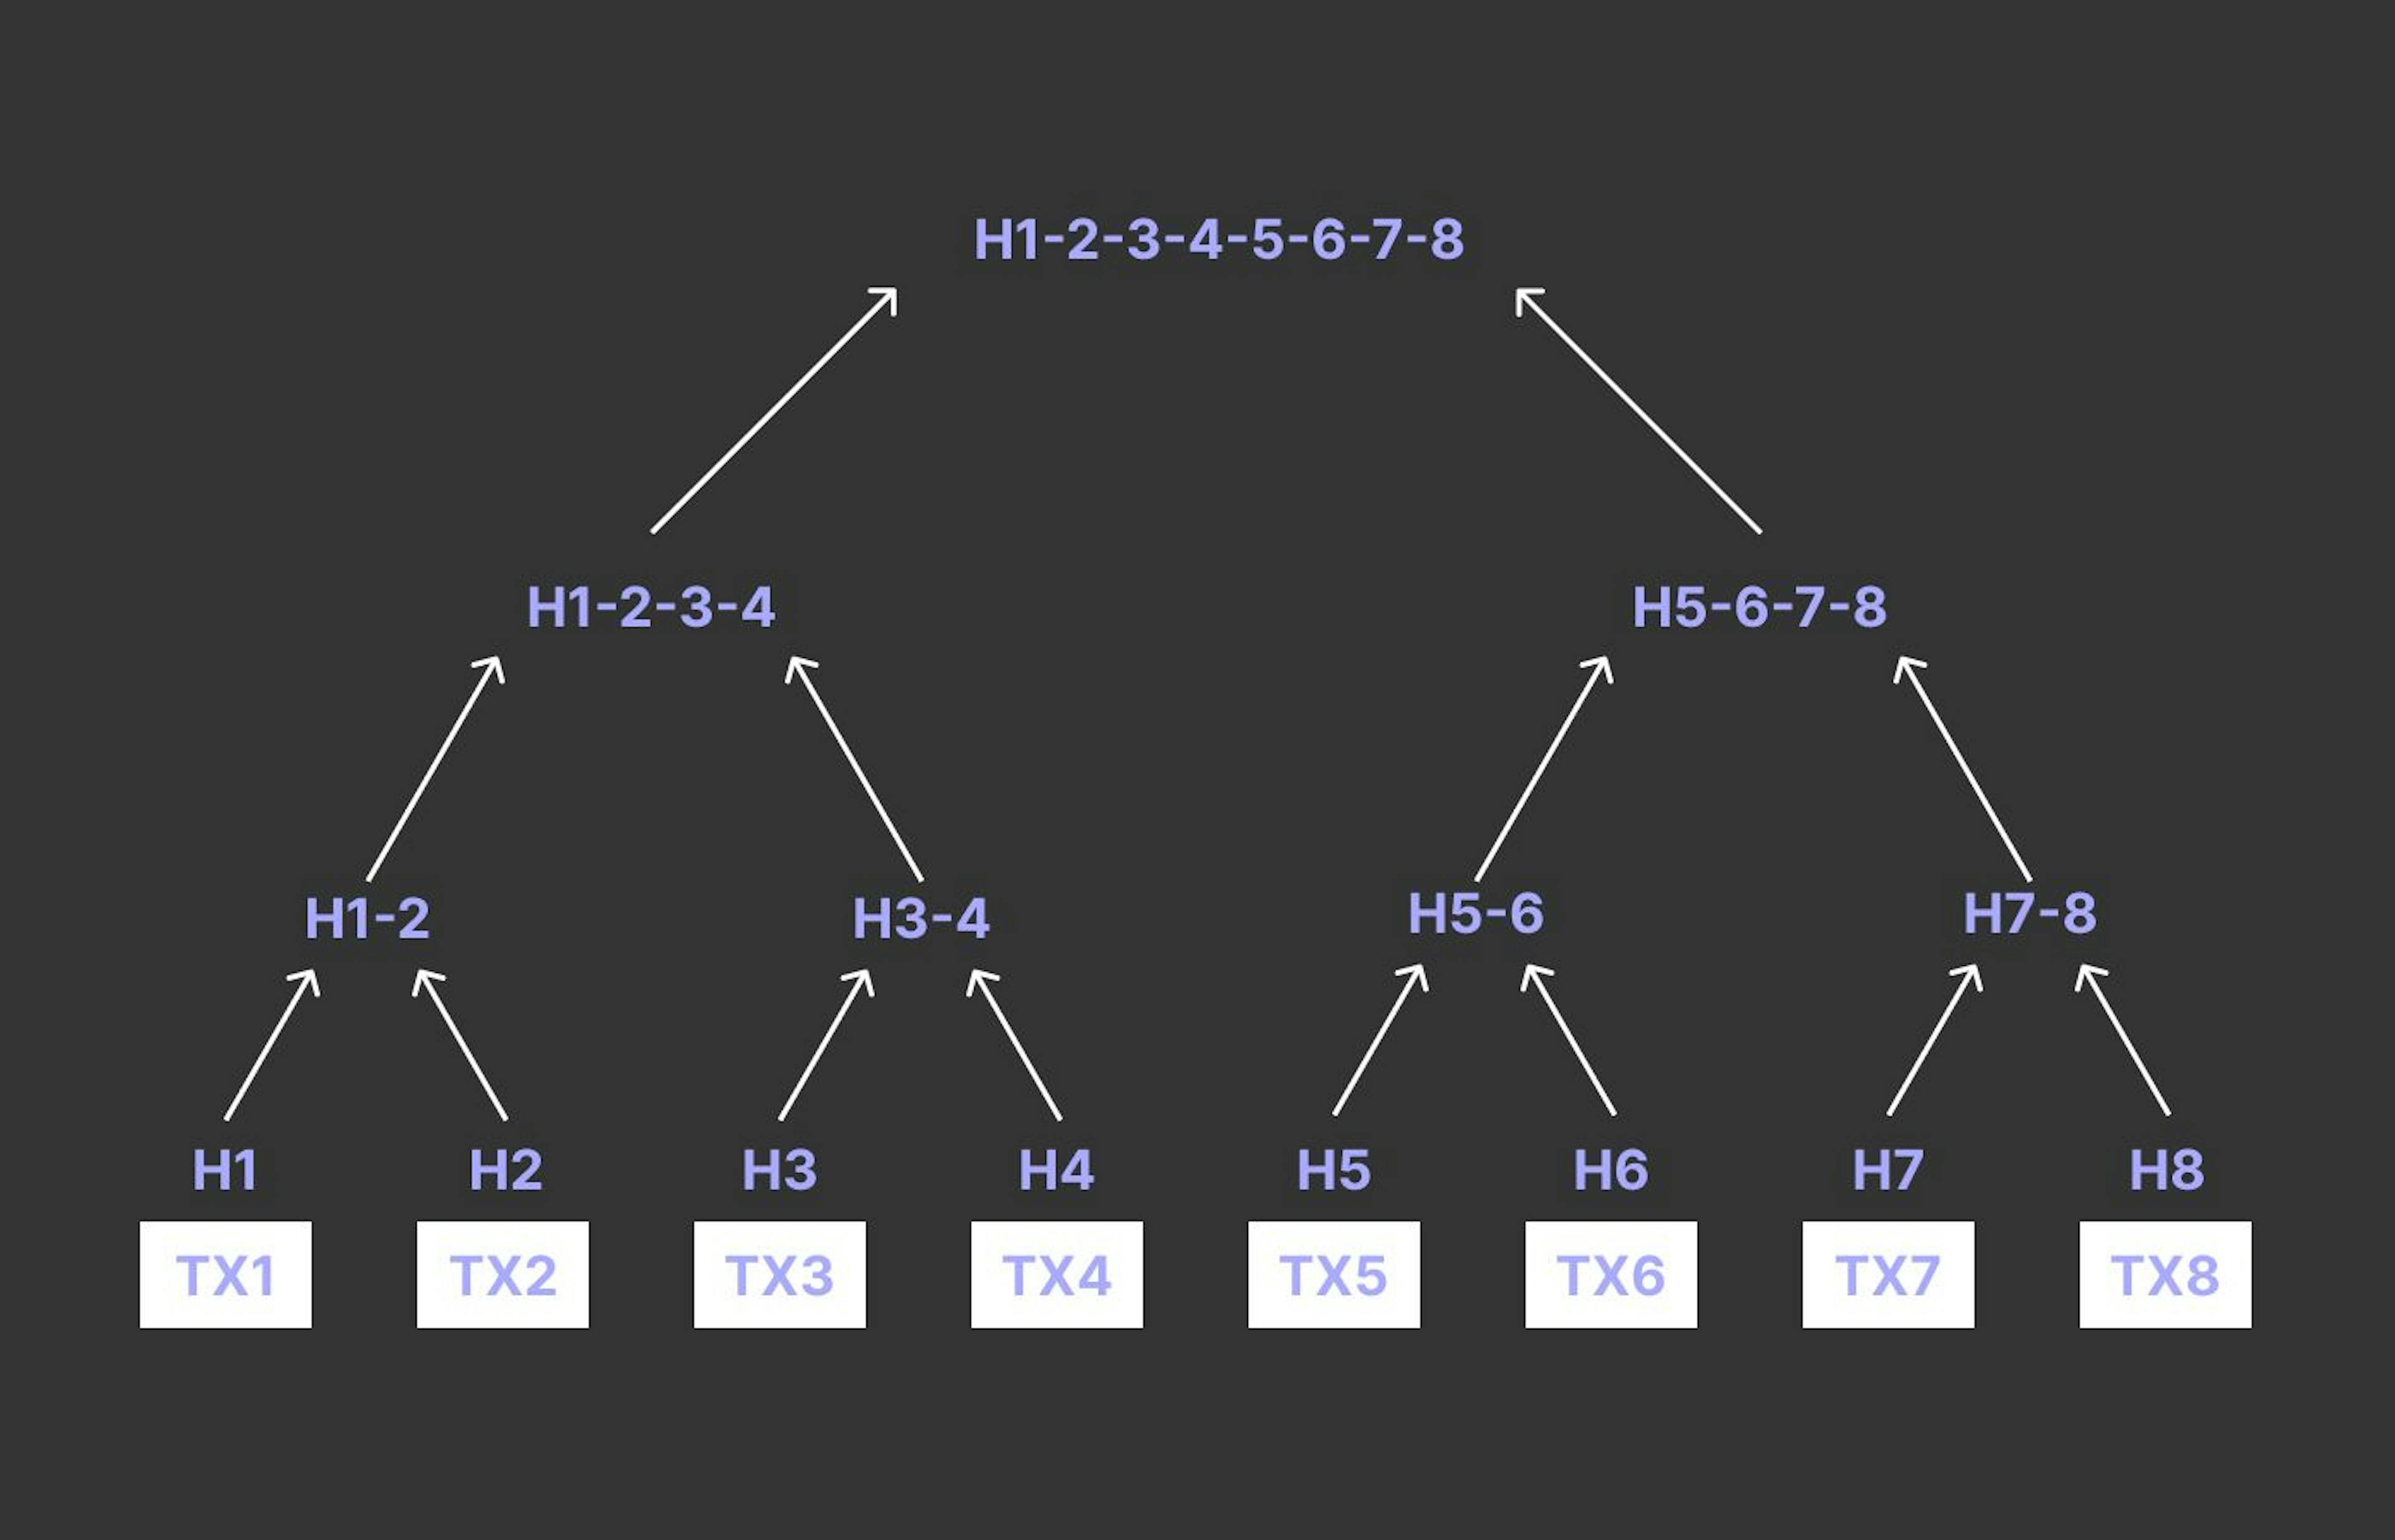 Merkle Tree basé sur les transactions